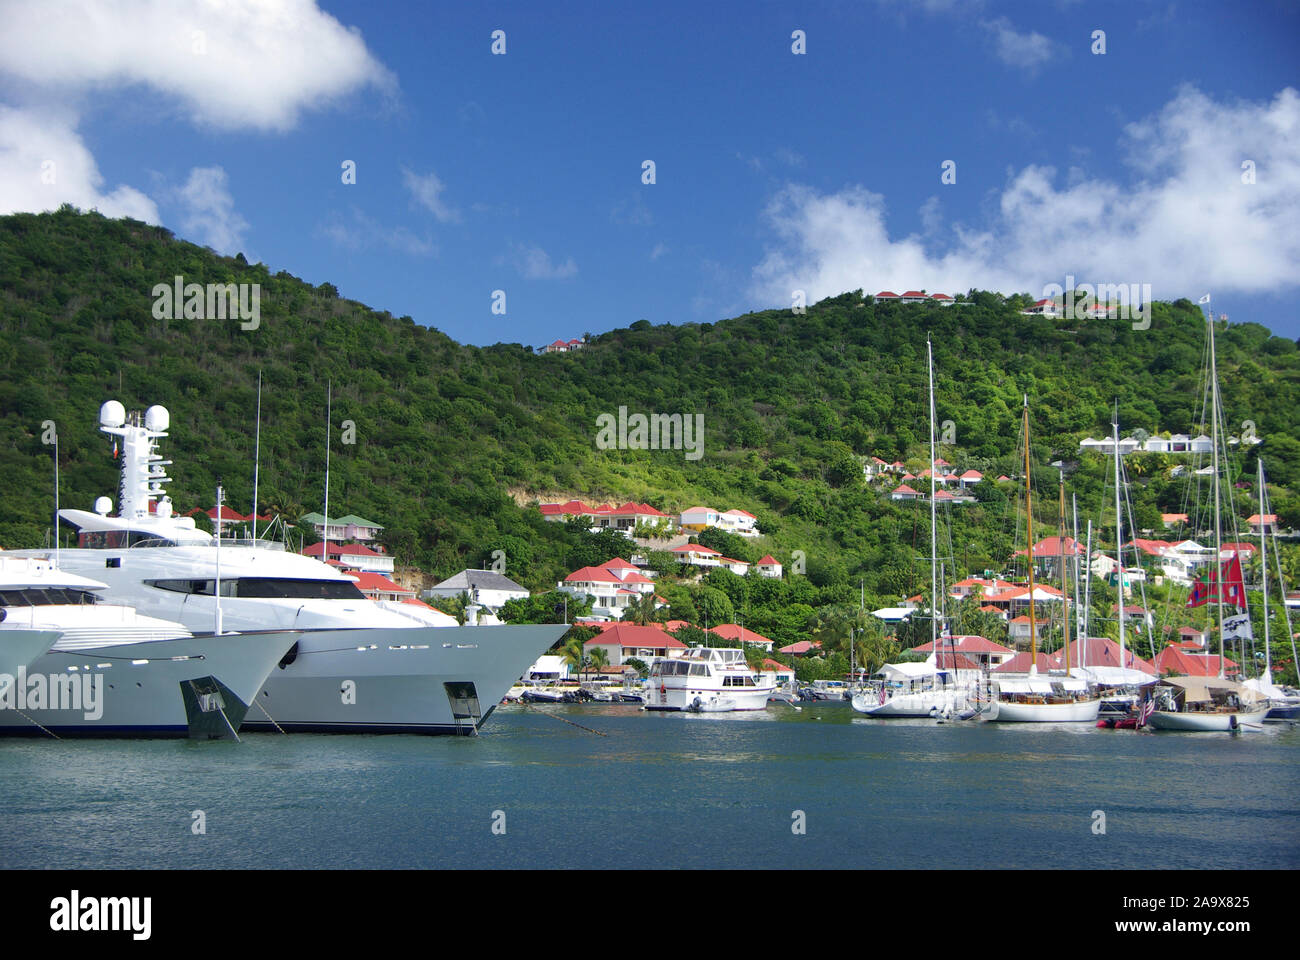 Karibik, Französiche Antillen, Saint Barthelemy (St. Barth), Gustavia, Nobeljachten im Hafen Stock Photo